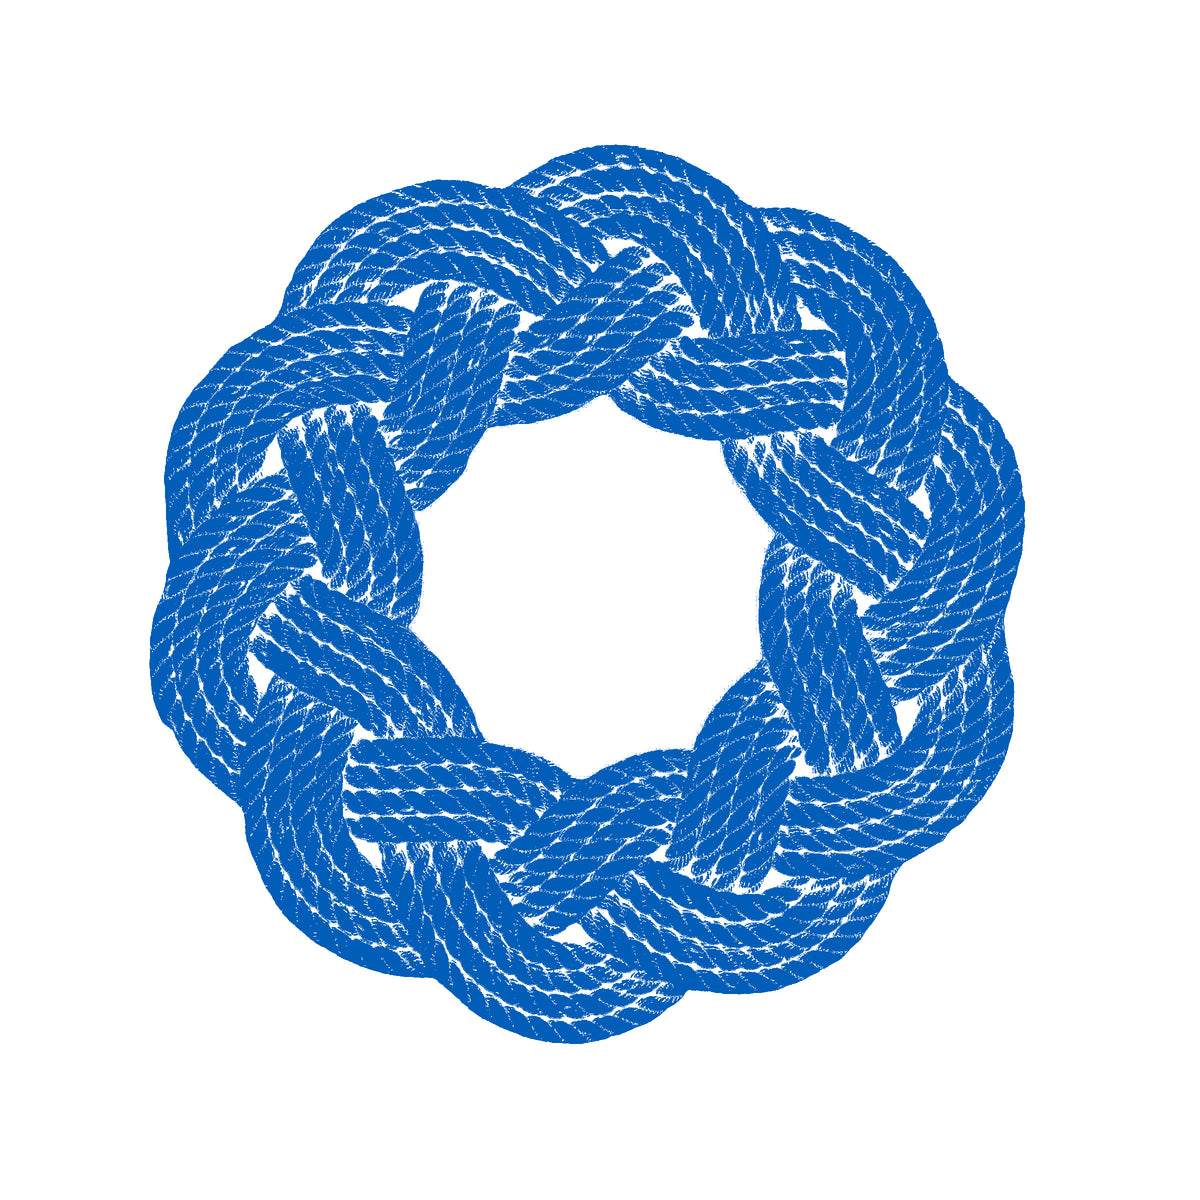 http://wharfwarp.com/cdn/shop/files/blue_wreath_logo_1200x1200.jpg?v=1636210390